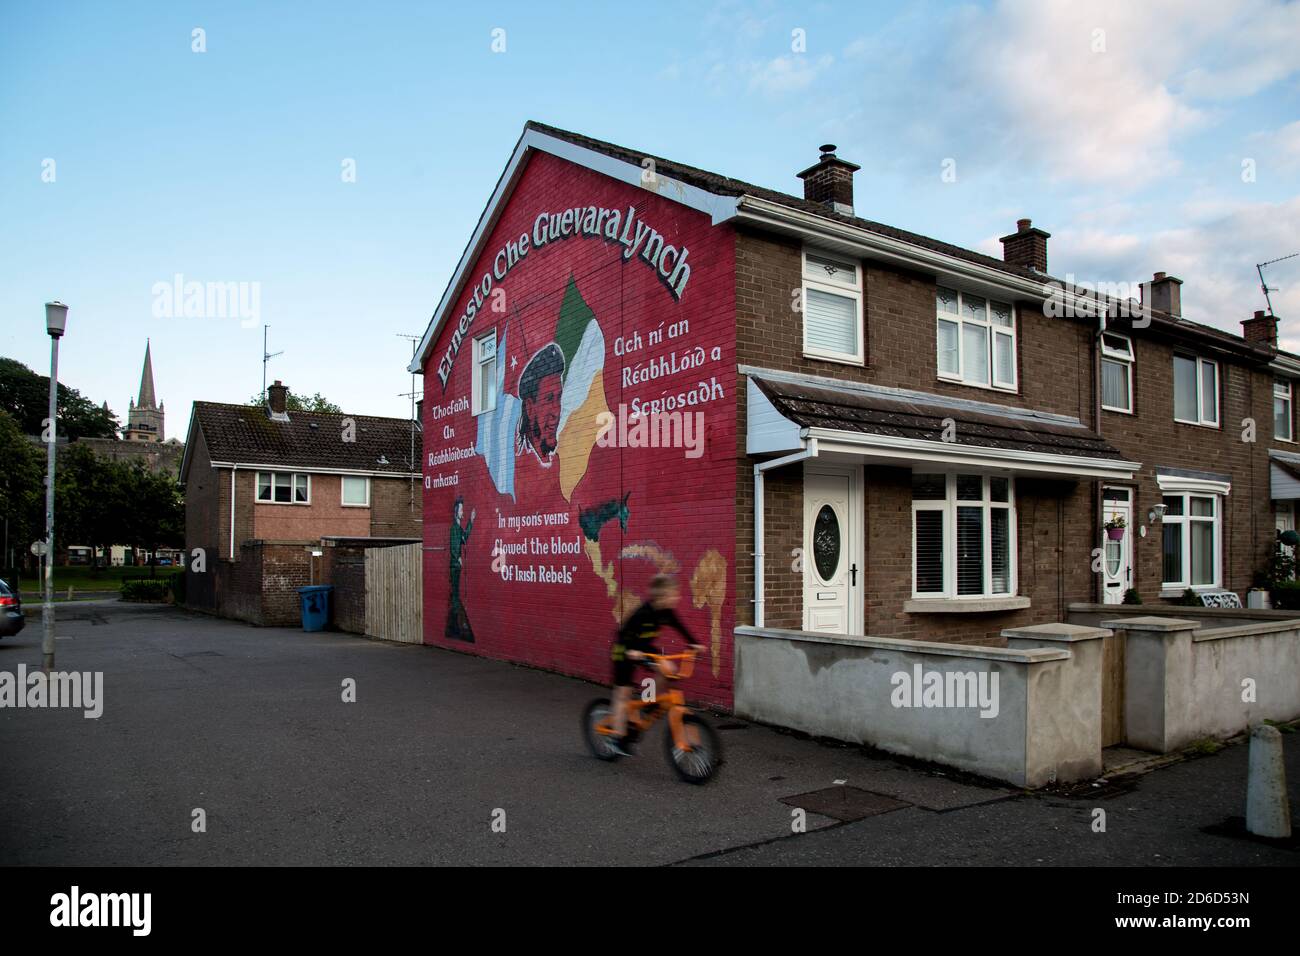 17.07.2019, Derry, Irlanda del Nord, Regno Unito - Mural del muro di Gaelish con che Guevara e bandiera irlandese in un insediamento dei lavoratori cattolici nelle paludi Foto Stock